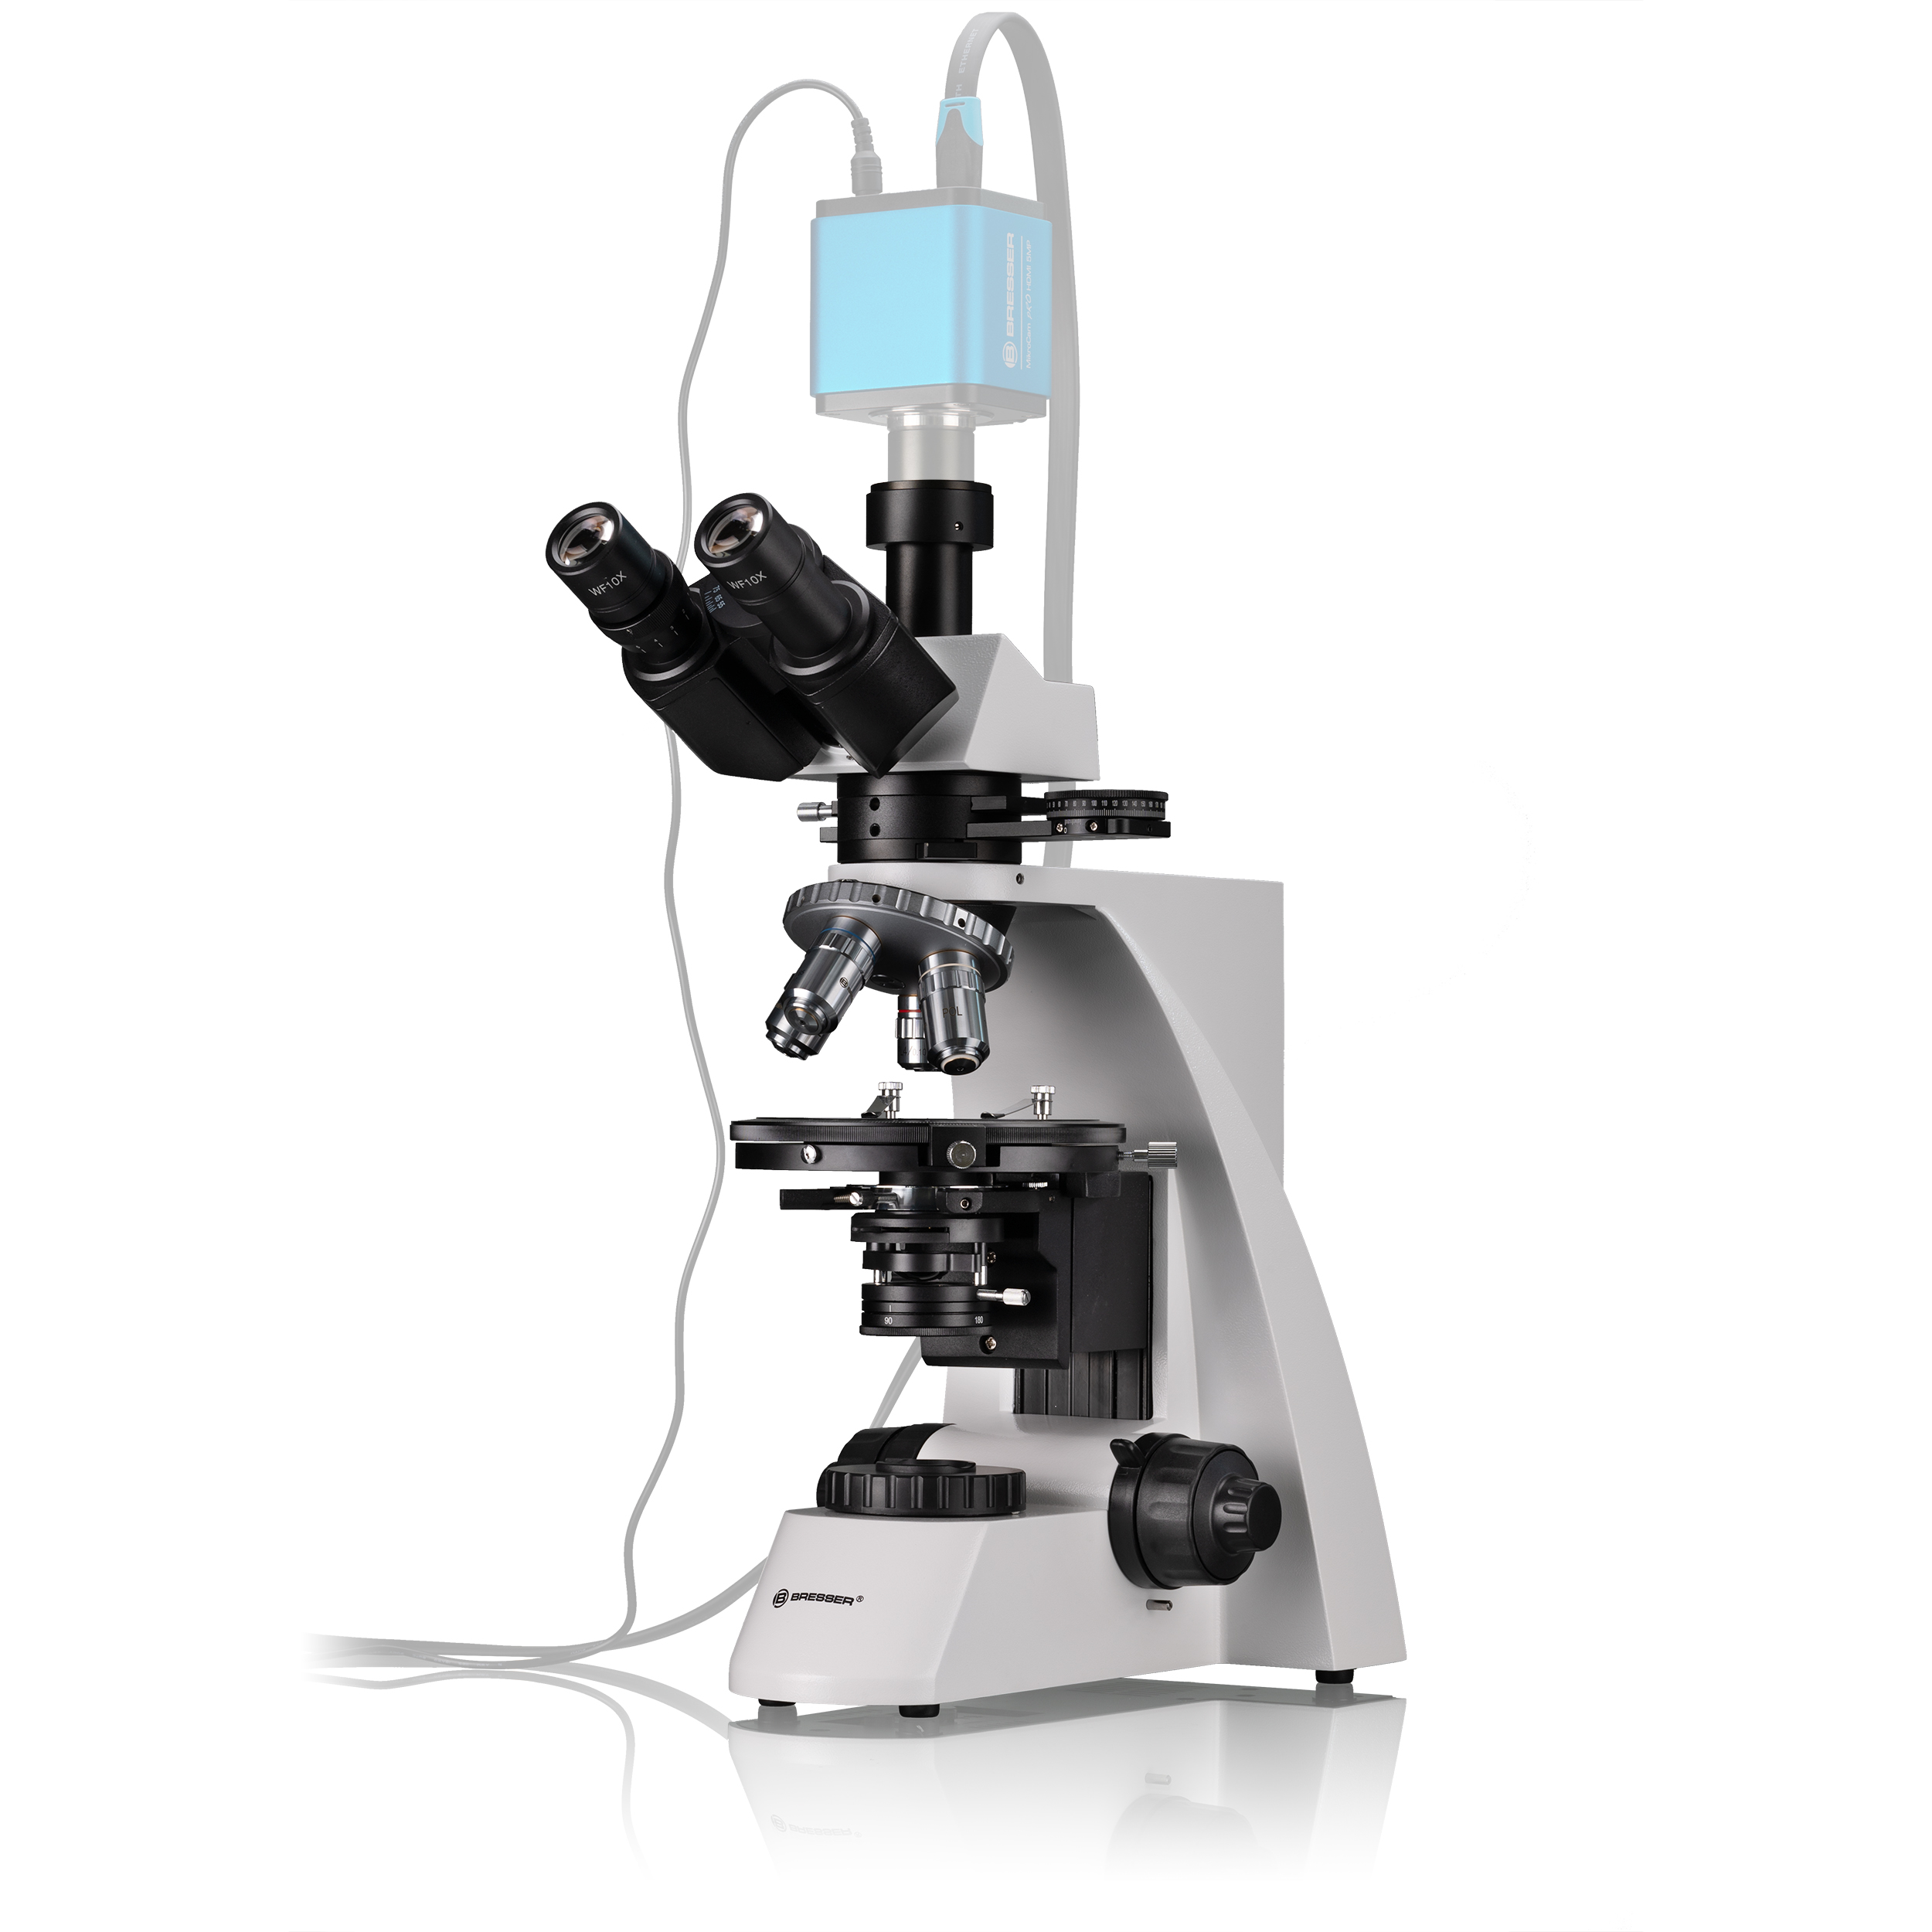 BRESSER Science MPO 401 Microscope